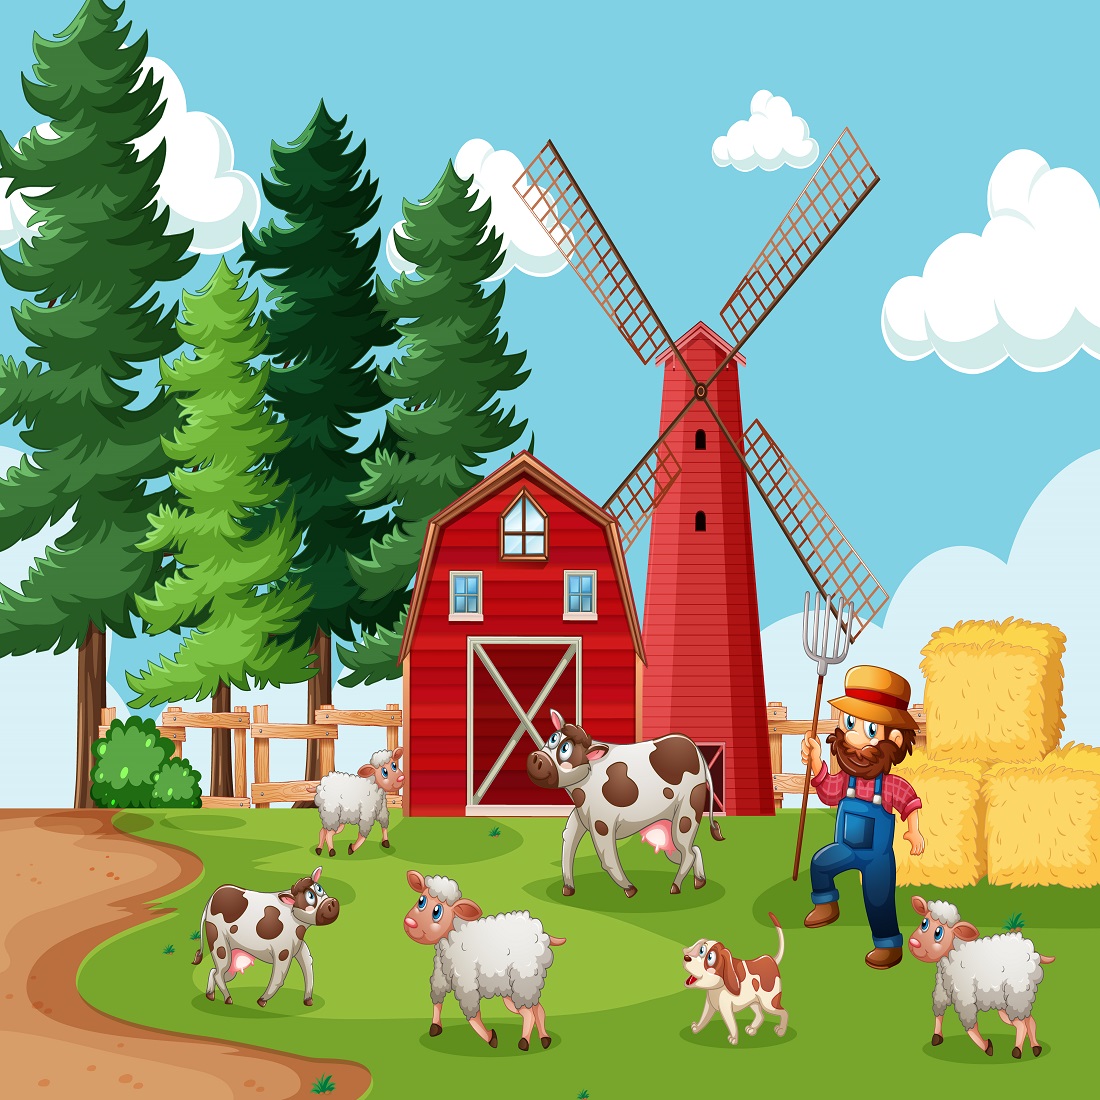 farmer with animal farm farm scene cartoon style 283